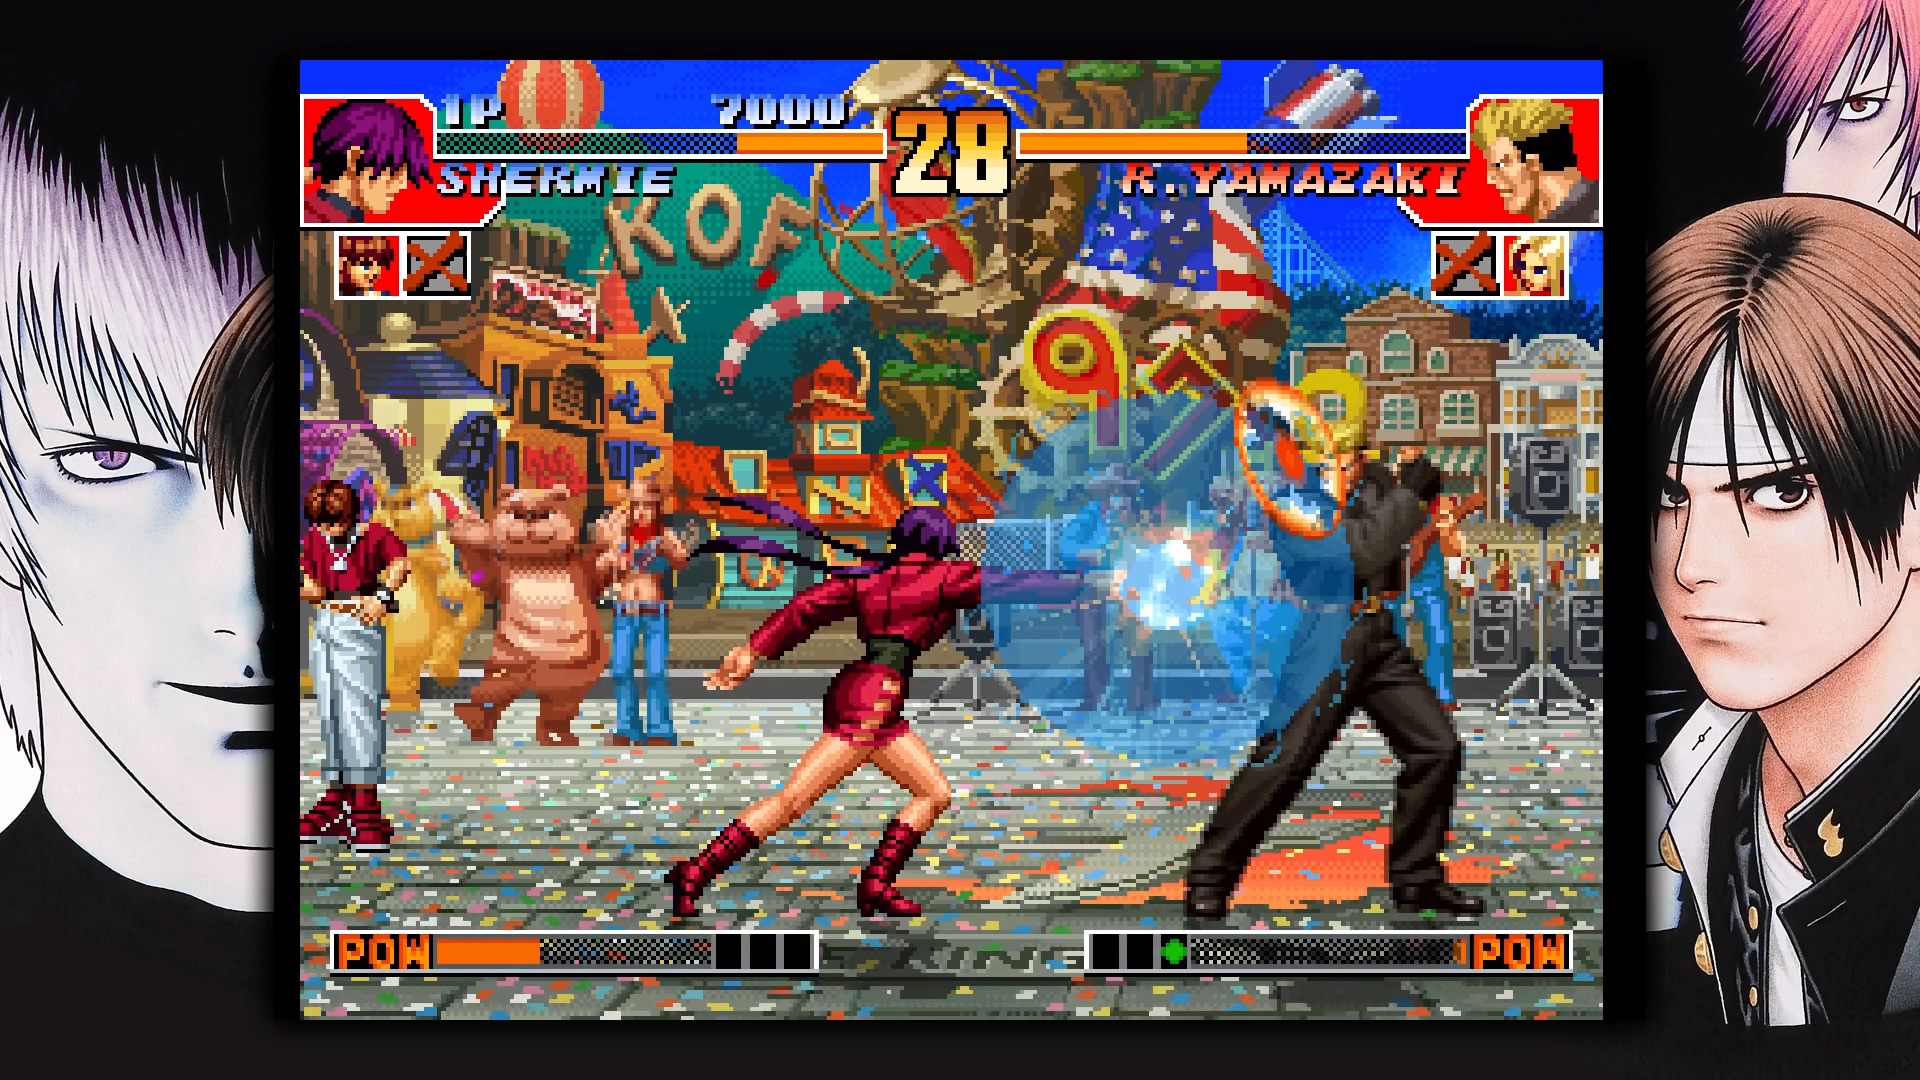 Nostálgico! The King of Fighters '97 Global Match ganha trailer de